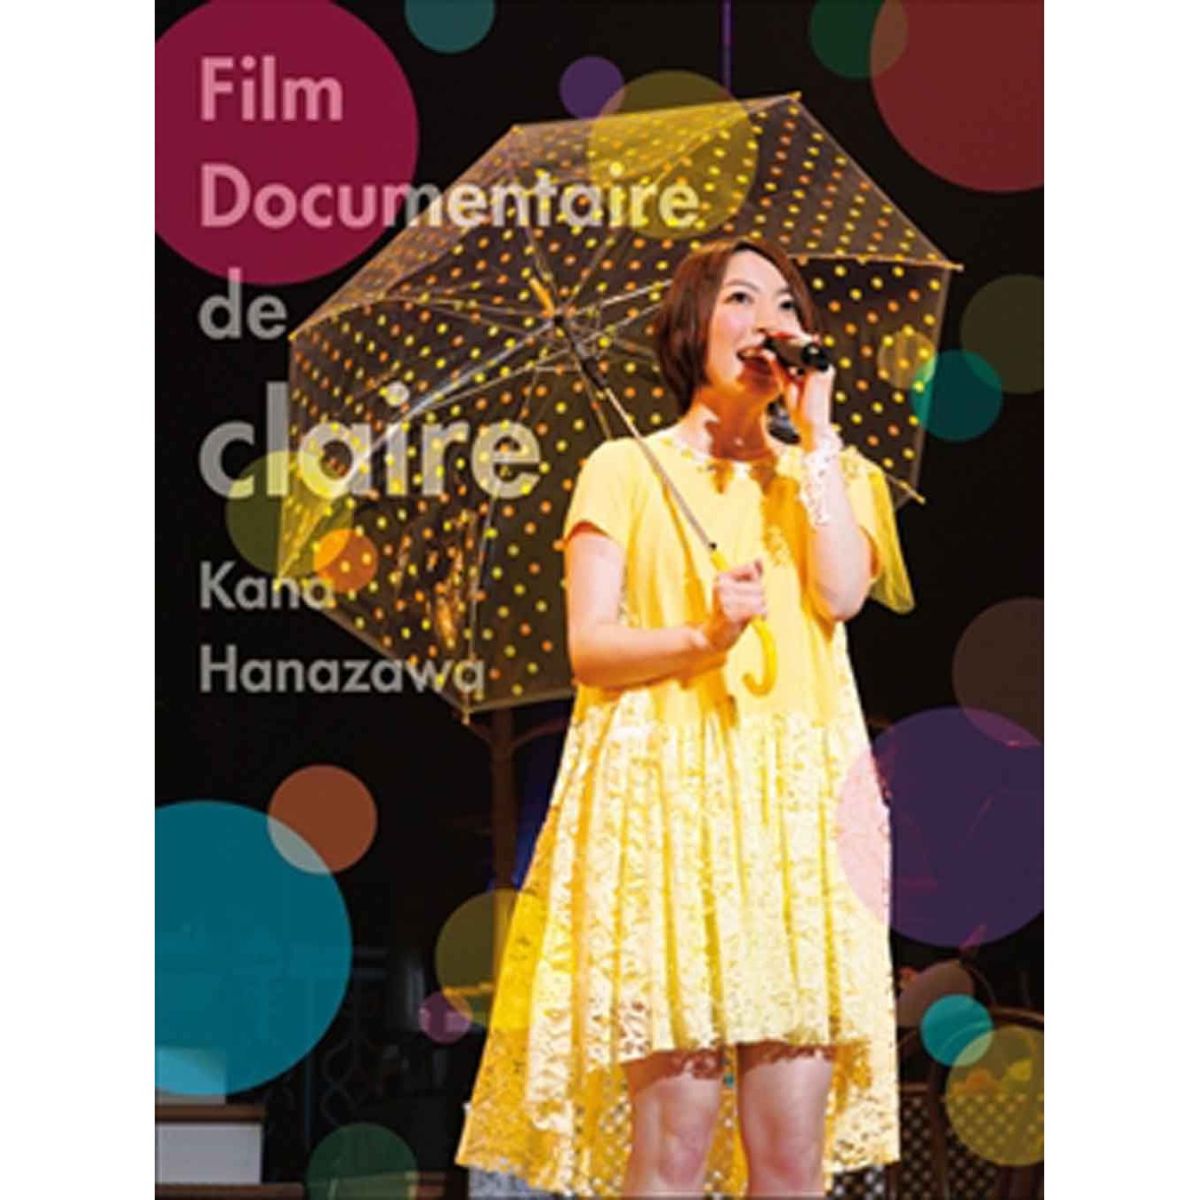 Film Documentaire de claire【Blu-ray】